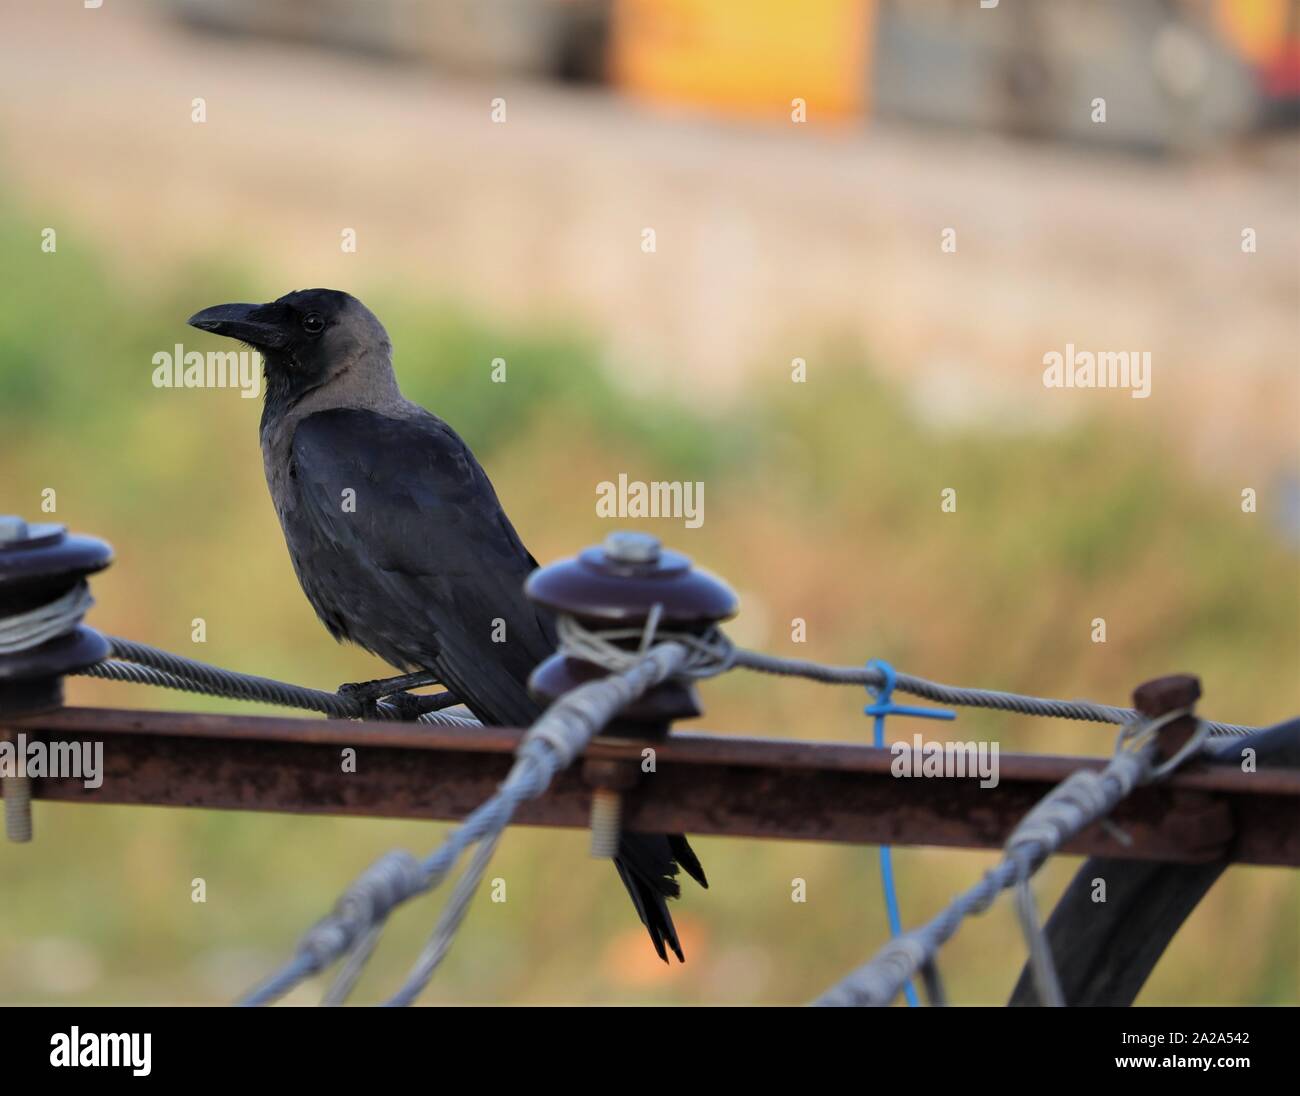 Das Haus Crow, auch bekannt als die Indischen, graynecked, Ceylon oder Colombo Krähe, ist ein gemeinsames Vogel der Krähe Familie, ist asiatischer Herkunft aber jetzt Foun Stockfoto